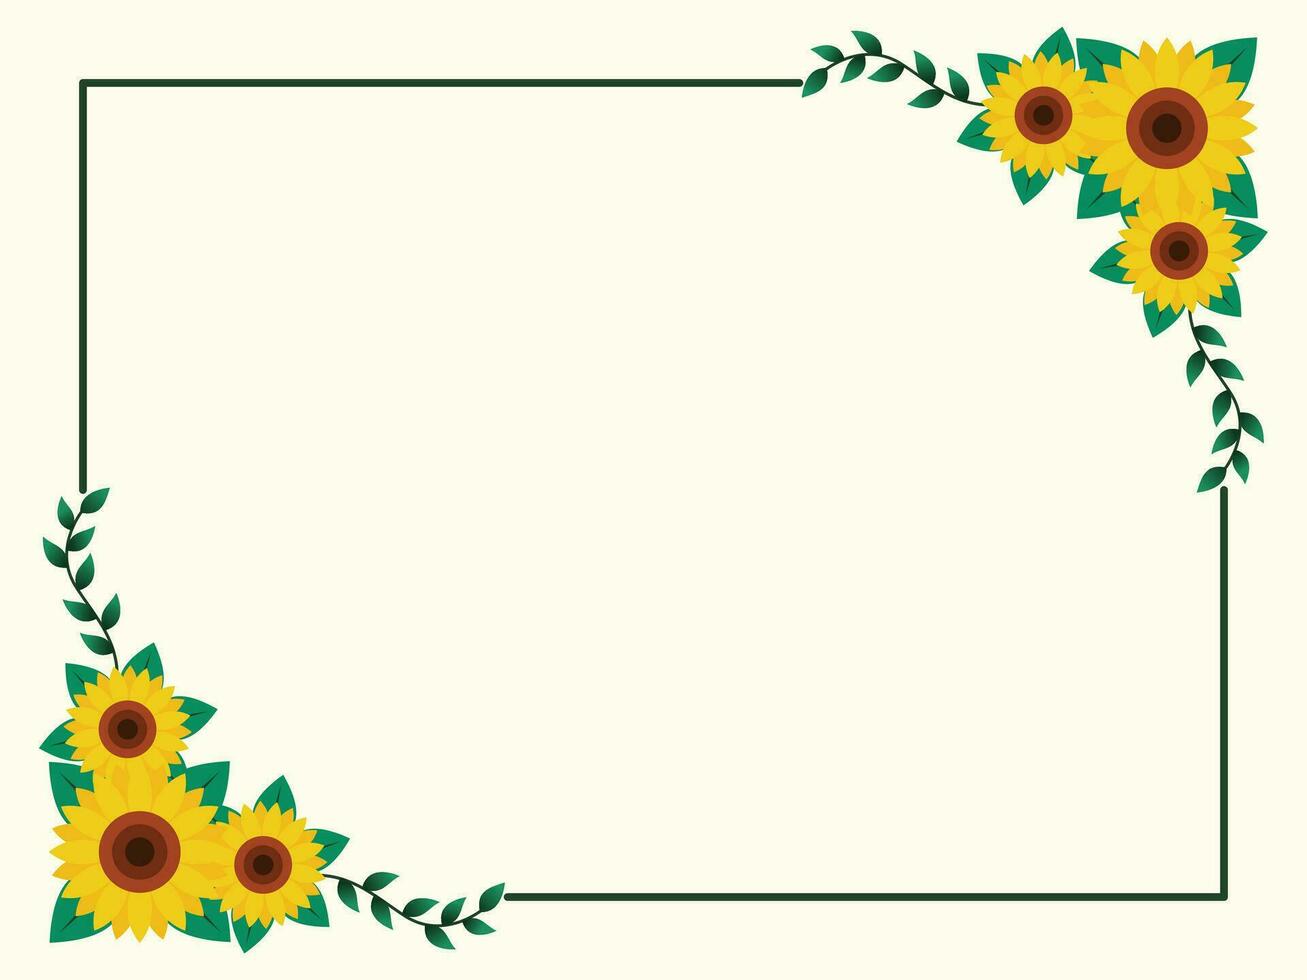 Sunflower Border Frame Flat Design Vector Illustration.